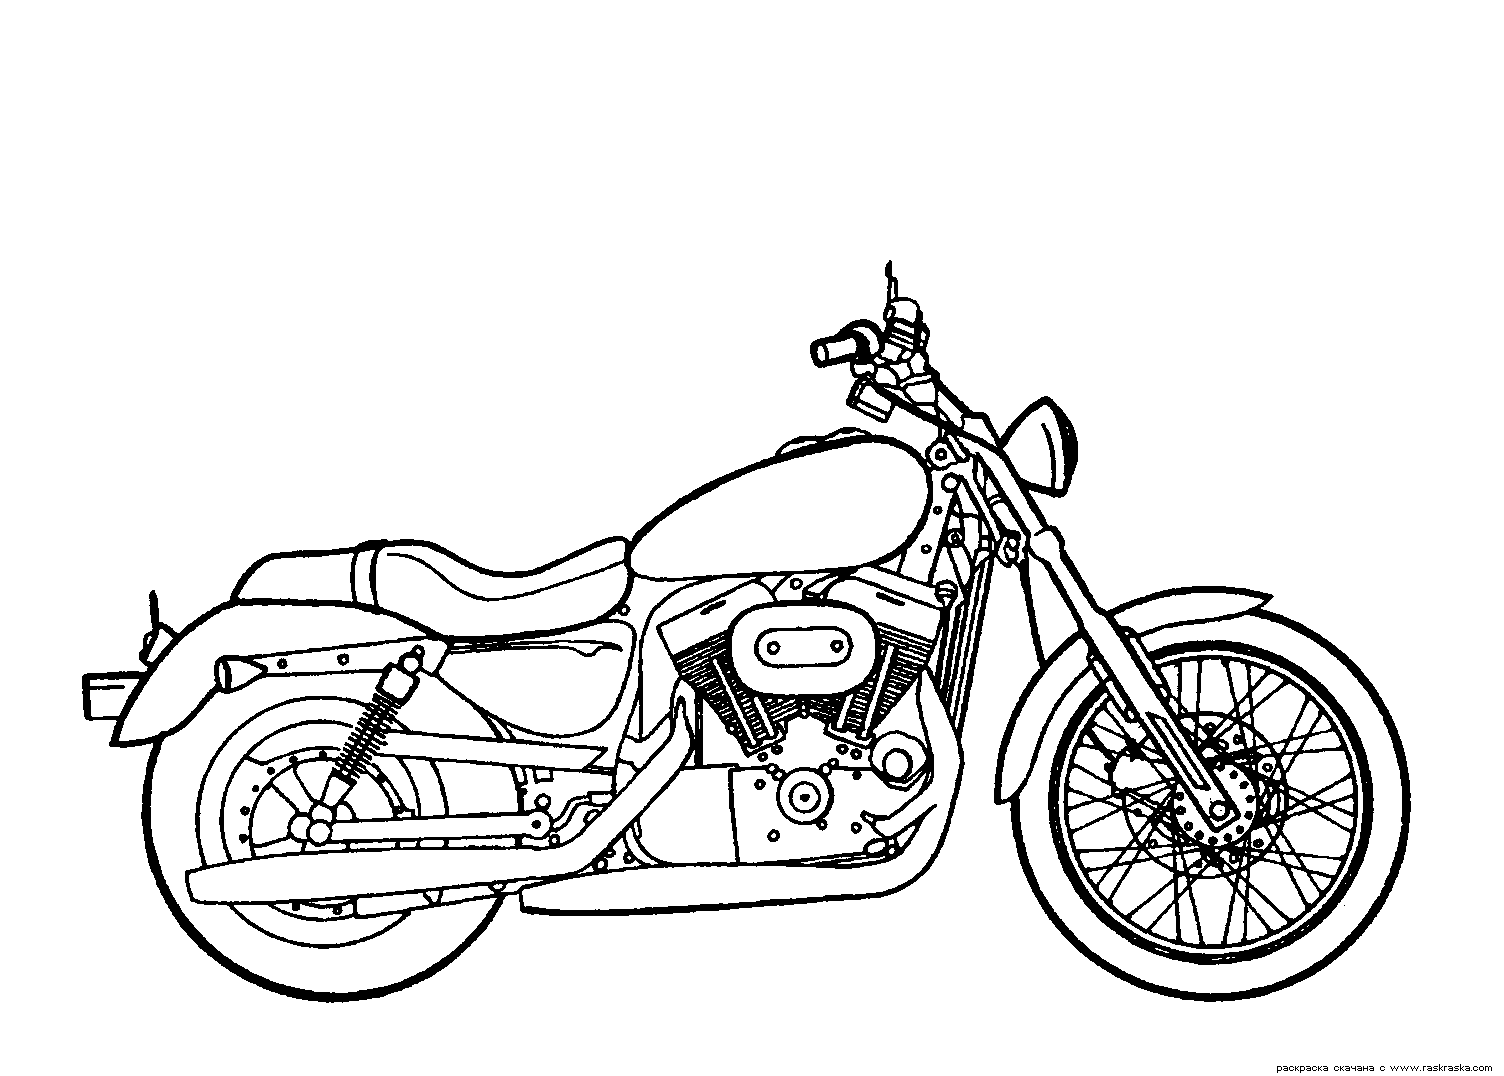 Desenho de Motoqueiro para colorir - Tudodesenhos